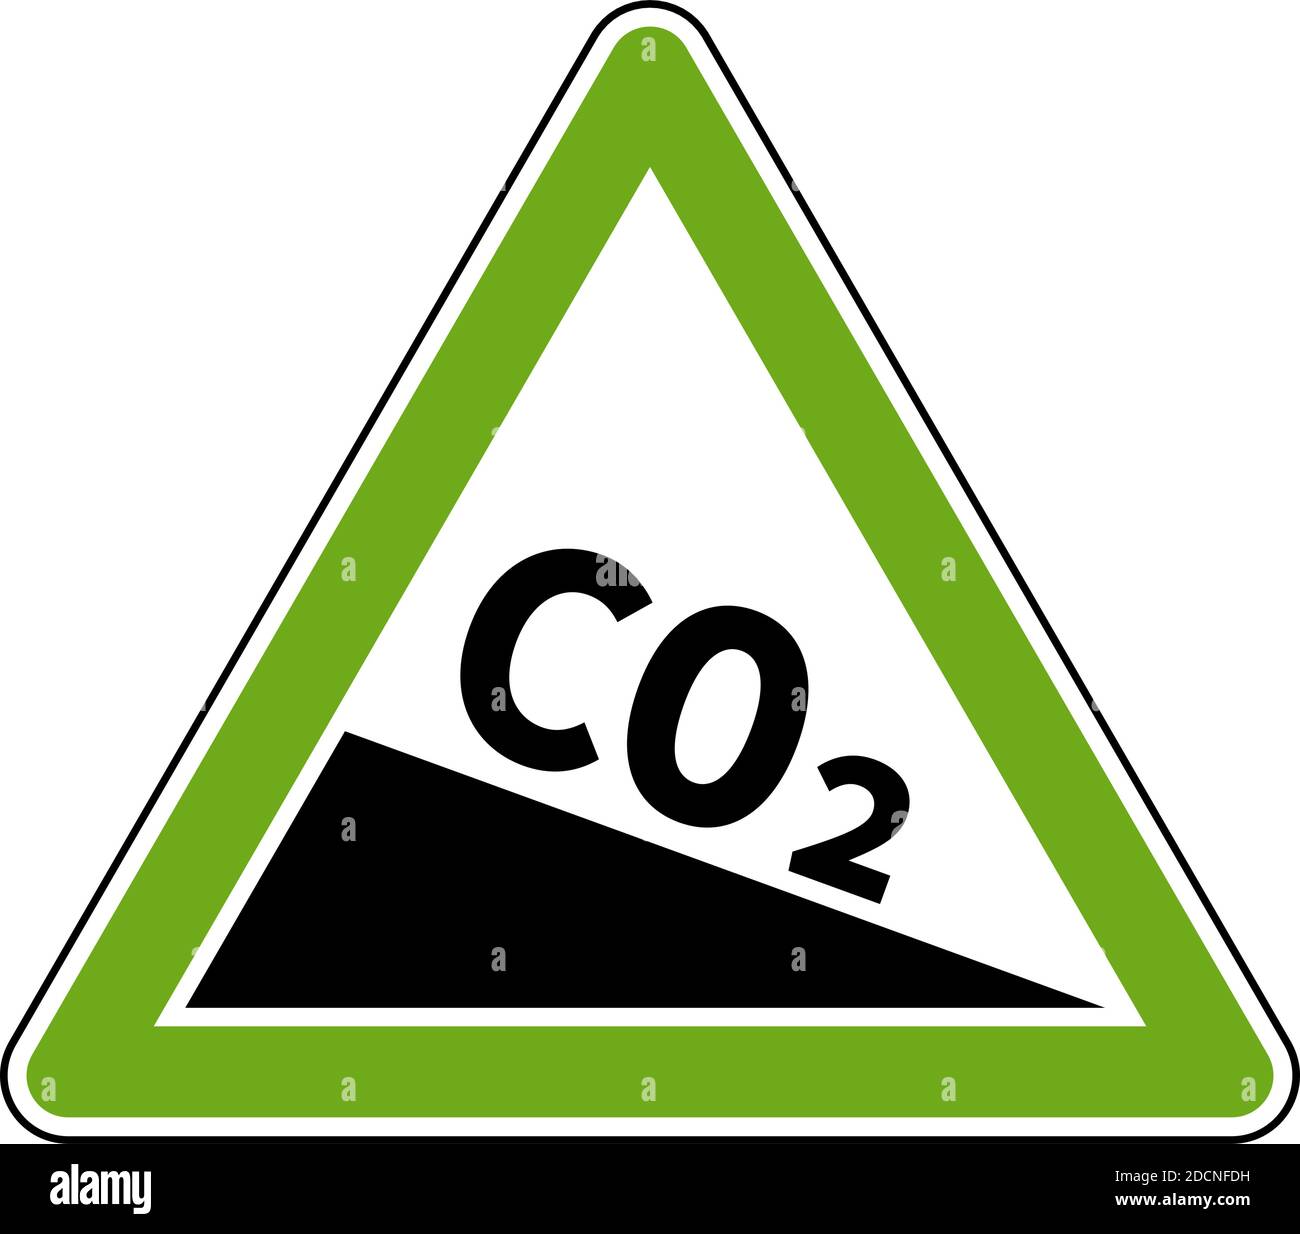 Symbole de réduction des émissions de CO2 illustration du vecteur triangulaire vert Illustration de Vecteur